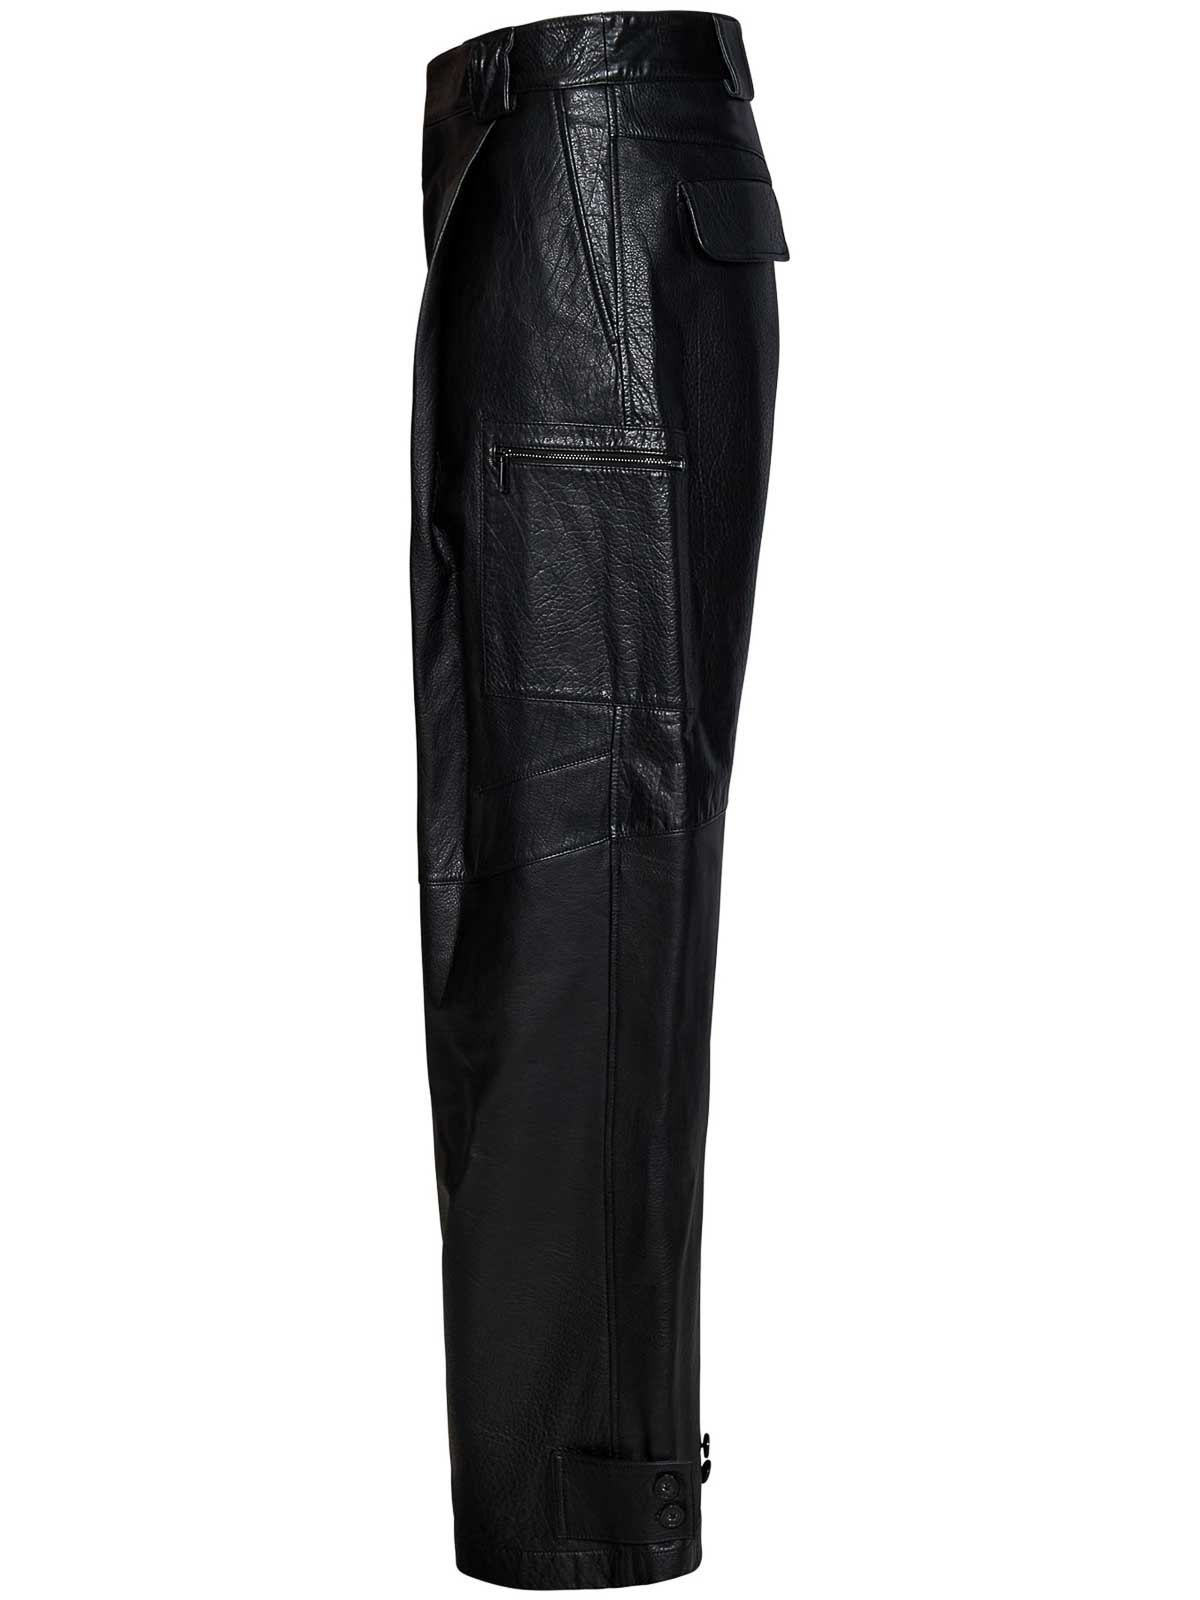 Armani Exchange FAUX WAISTBAND WIDE LEG BLACK TROUSERS Size 10 Women's |  eBay